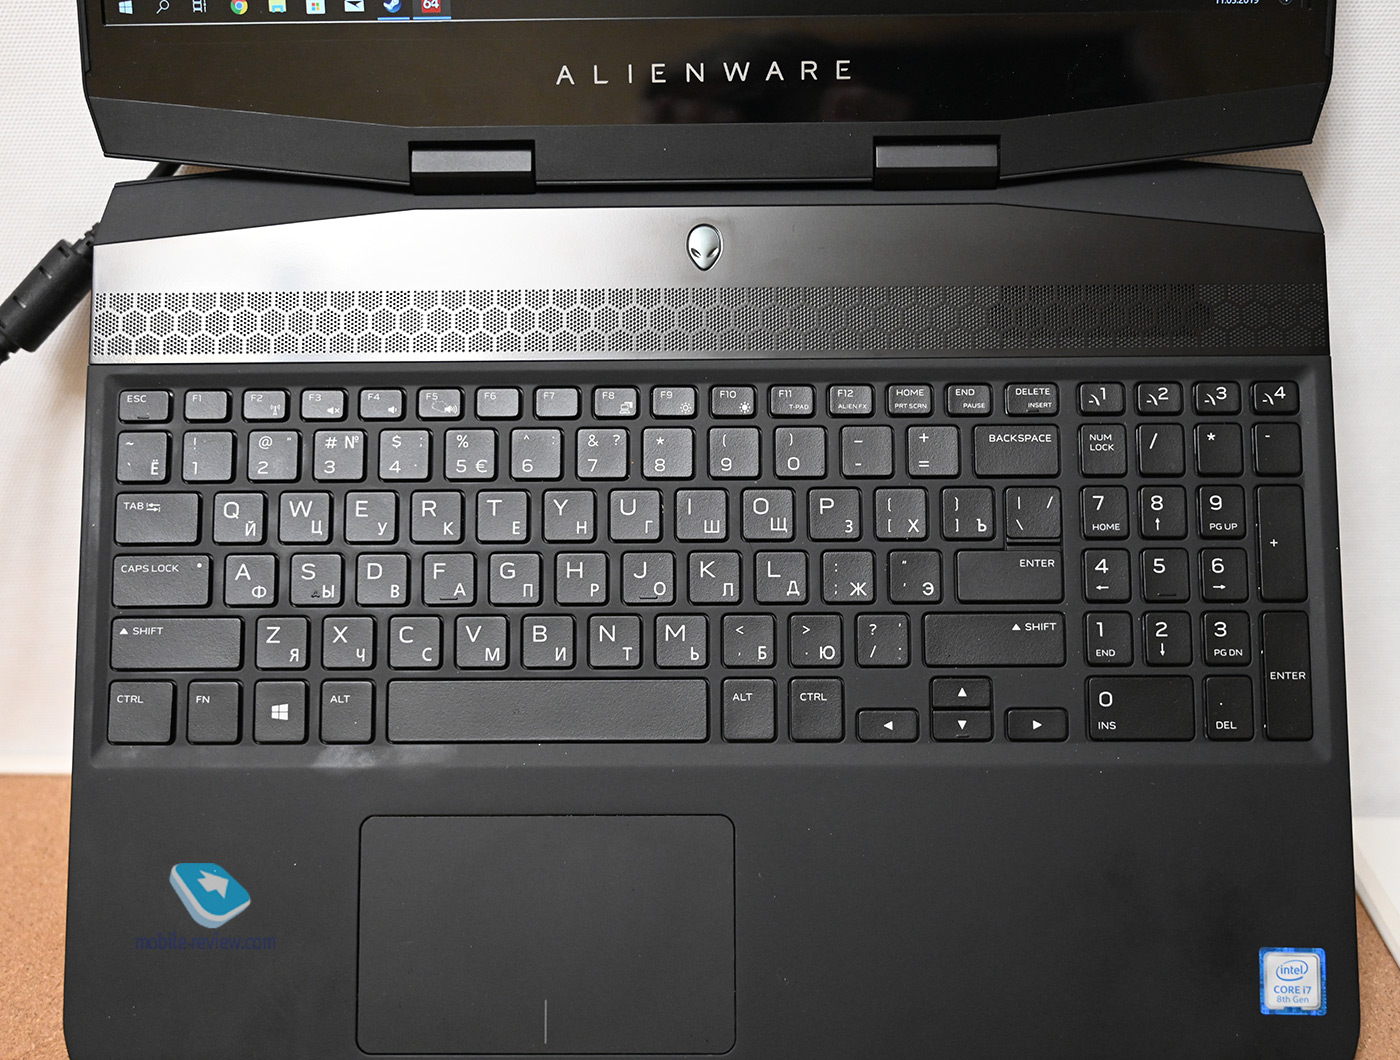  :  Dell Alienware M15